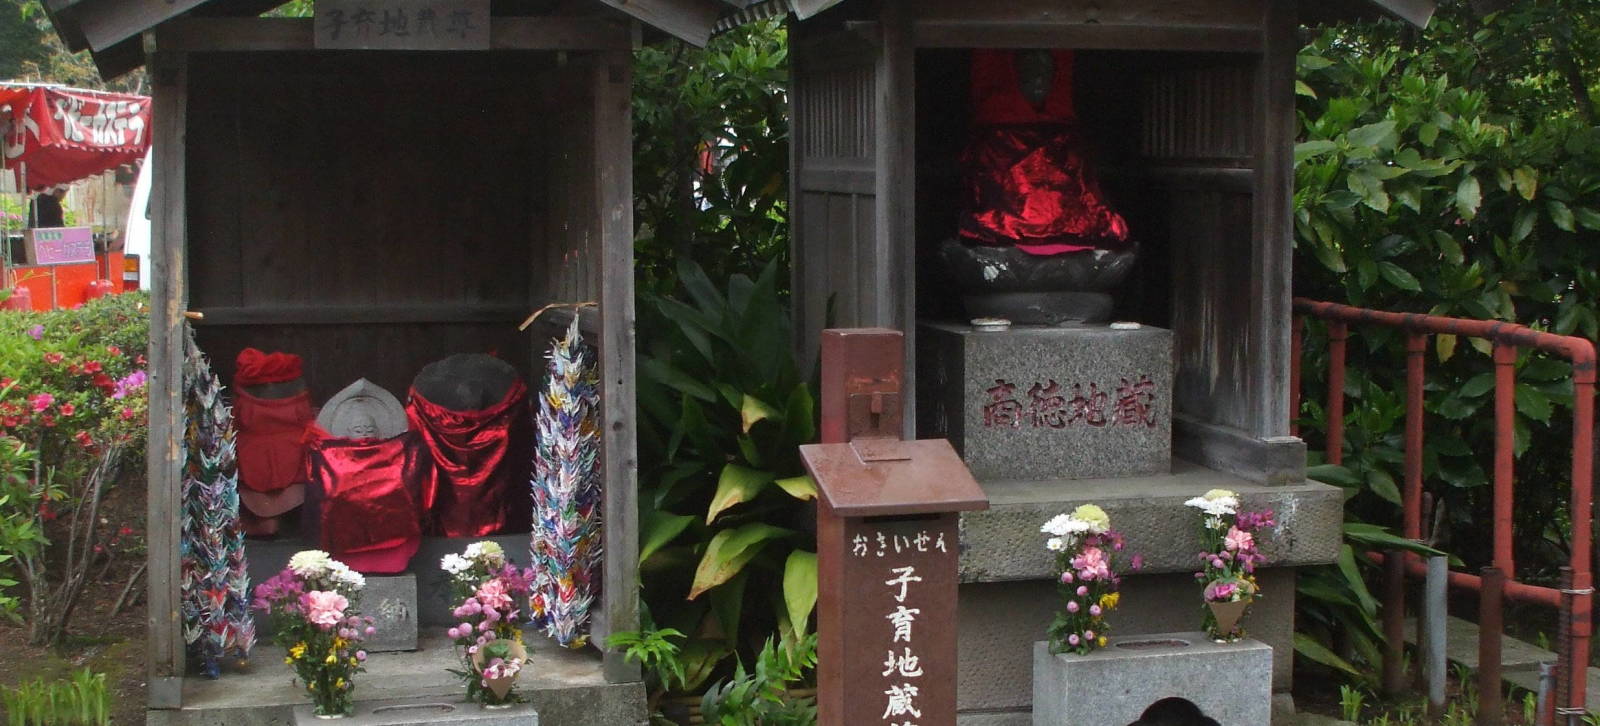 Jizō statues at Mitsumine Shrine at Sensō-ji, a major Buddhist temple at Asakusa, Tōkyō